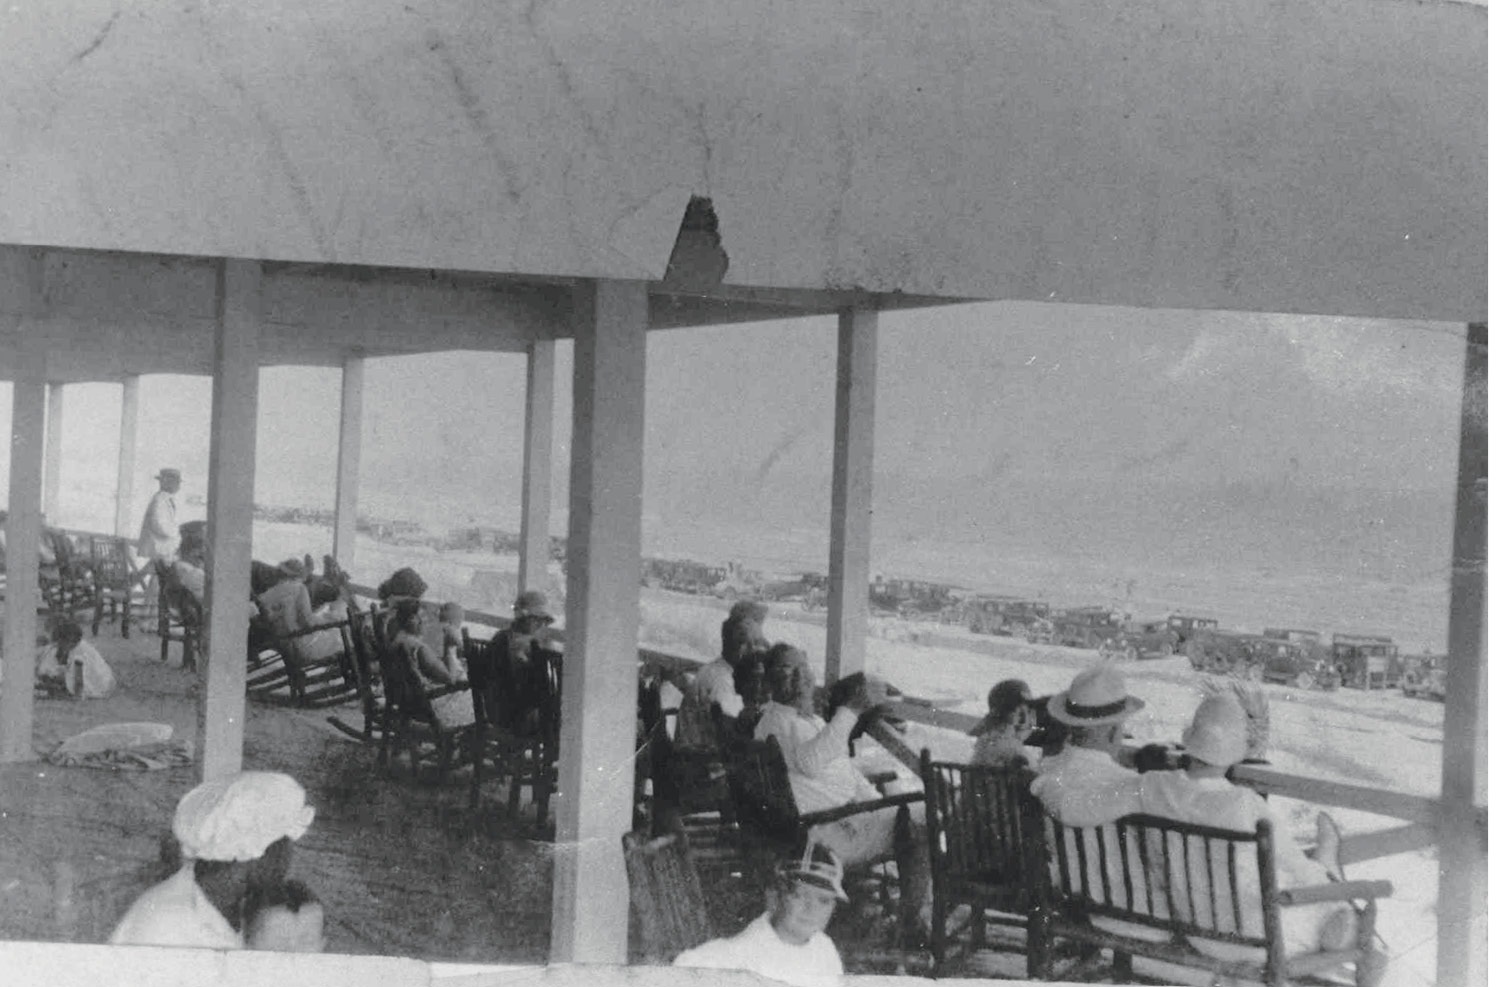 Kicking back at the Pavilion, circa 1930